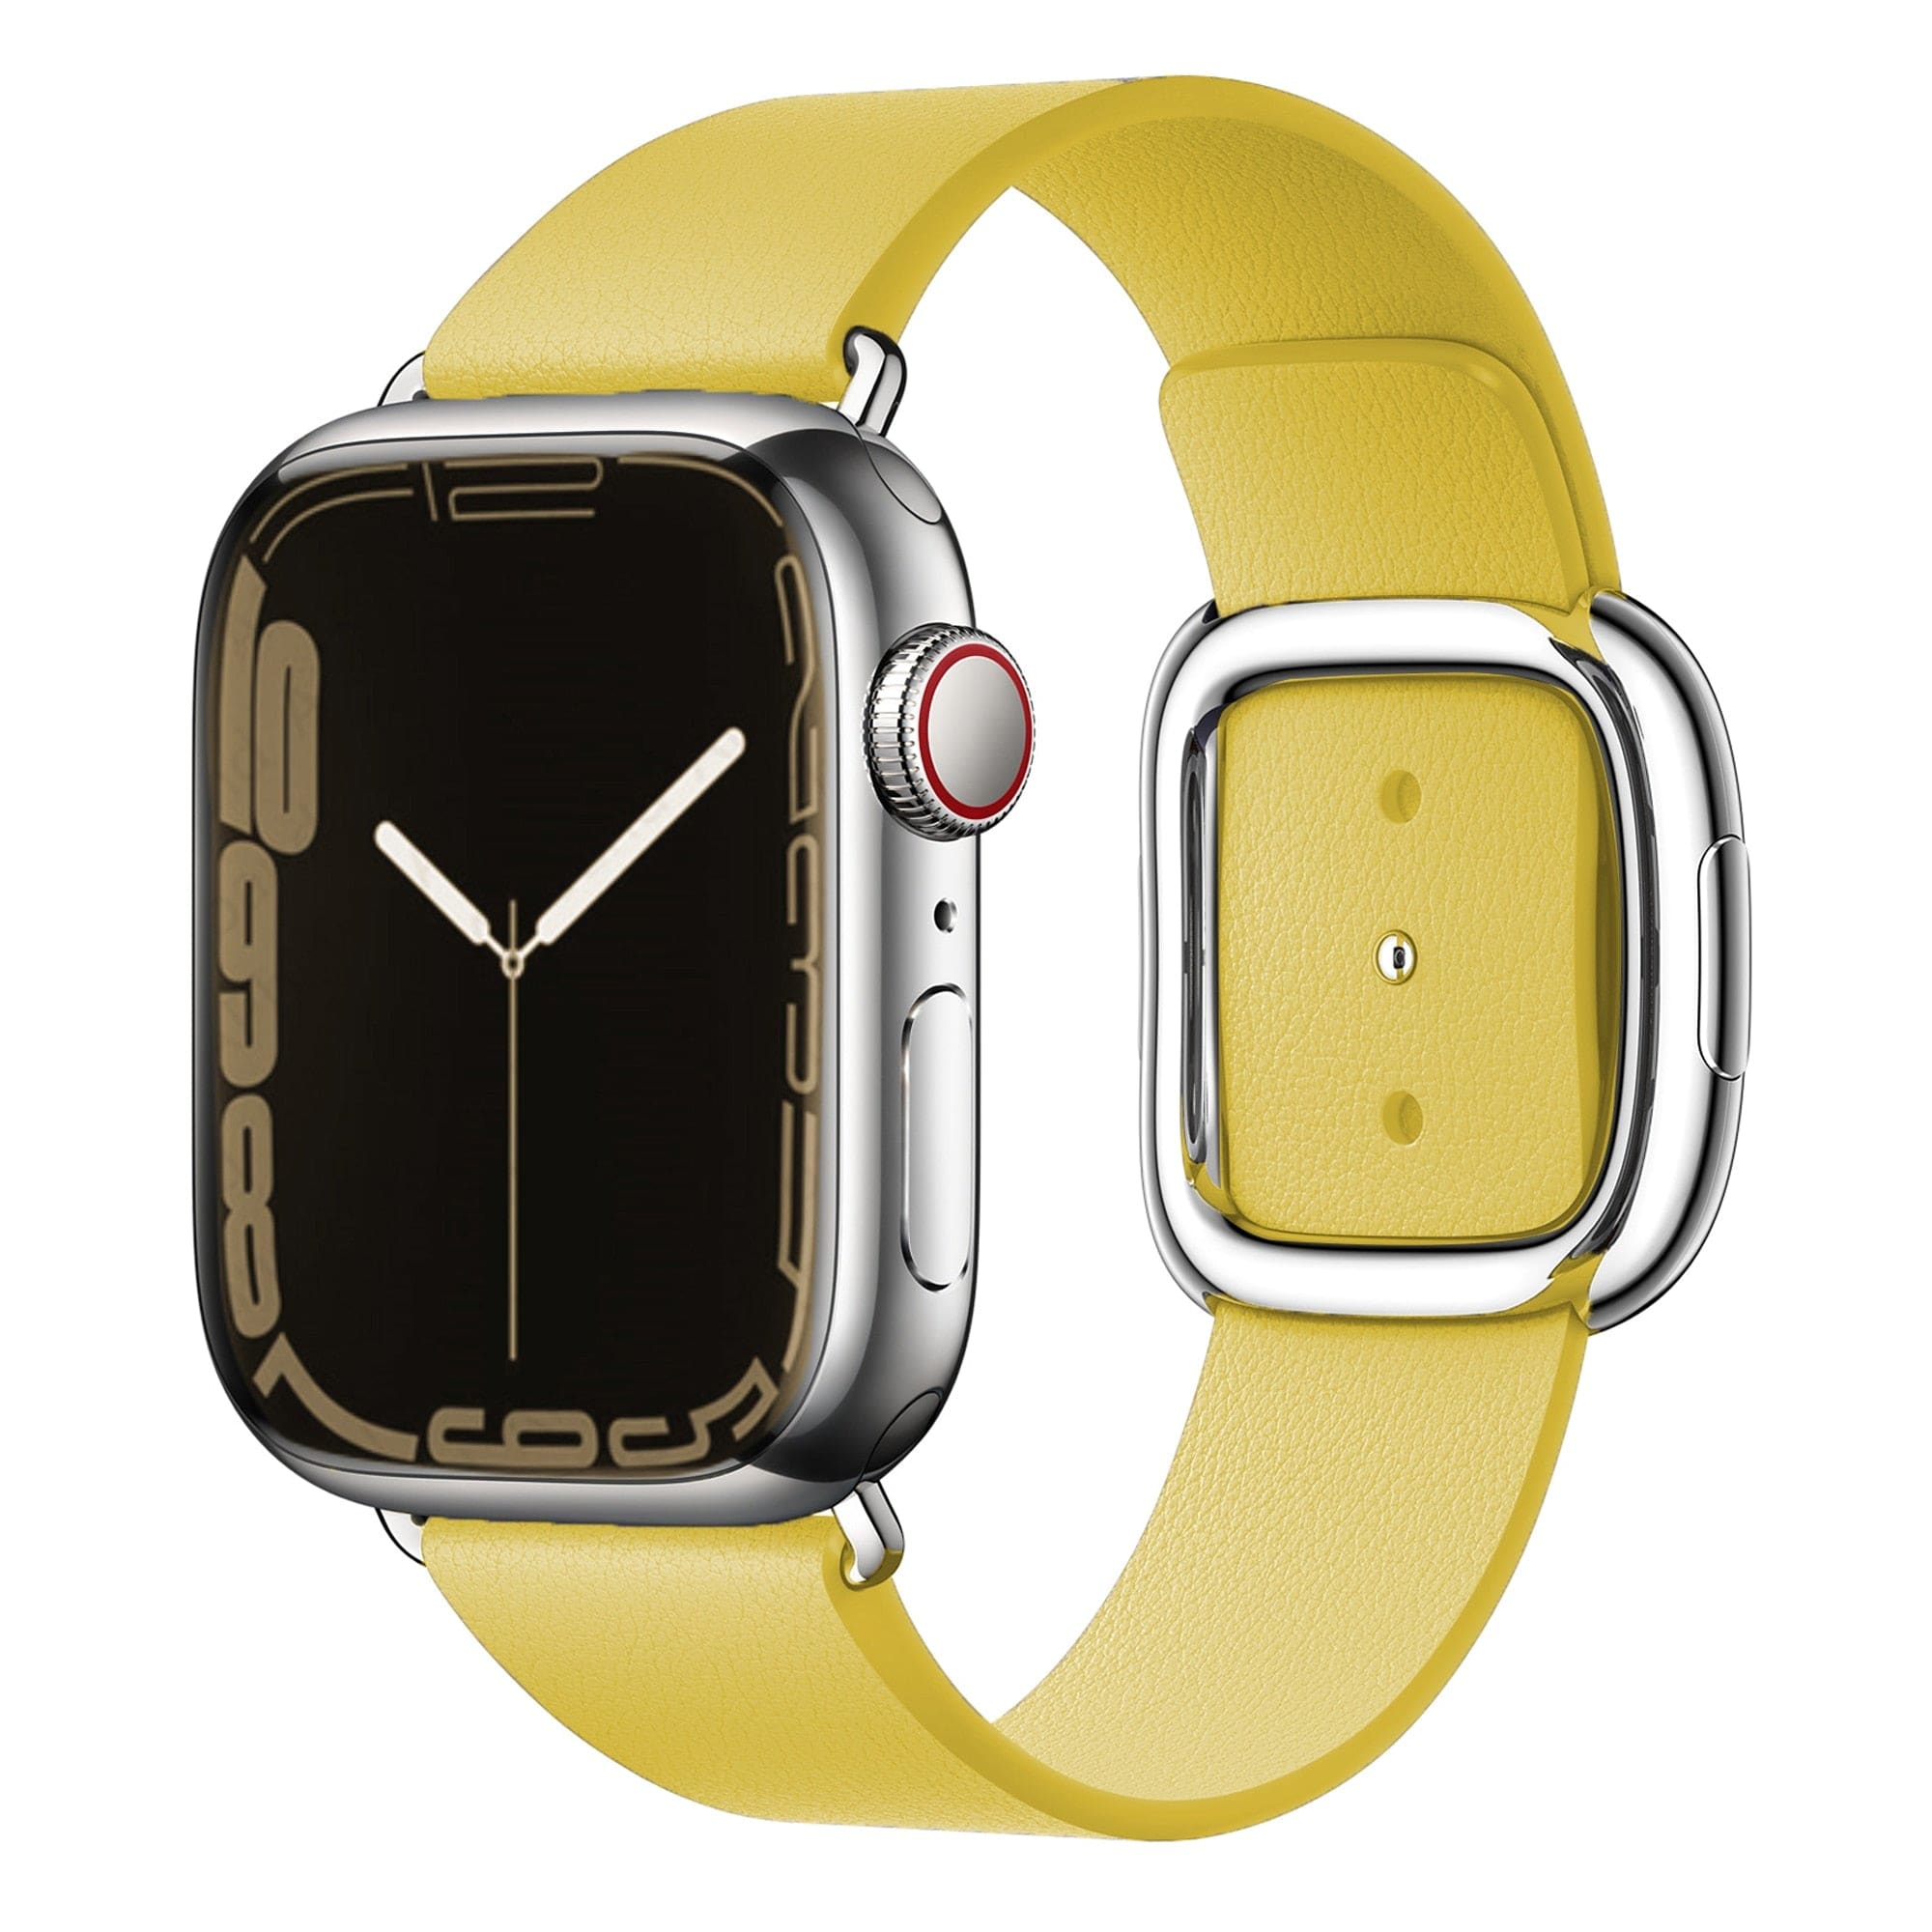 Echtleder-Armband mit Edelstahl-Schnalle - Gelb / 38-40-41 mm - Apple Watch Armband